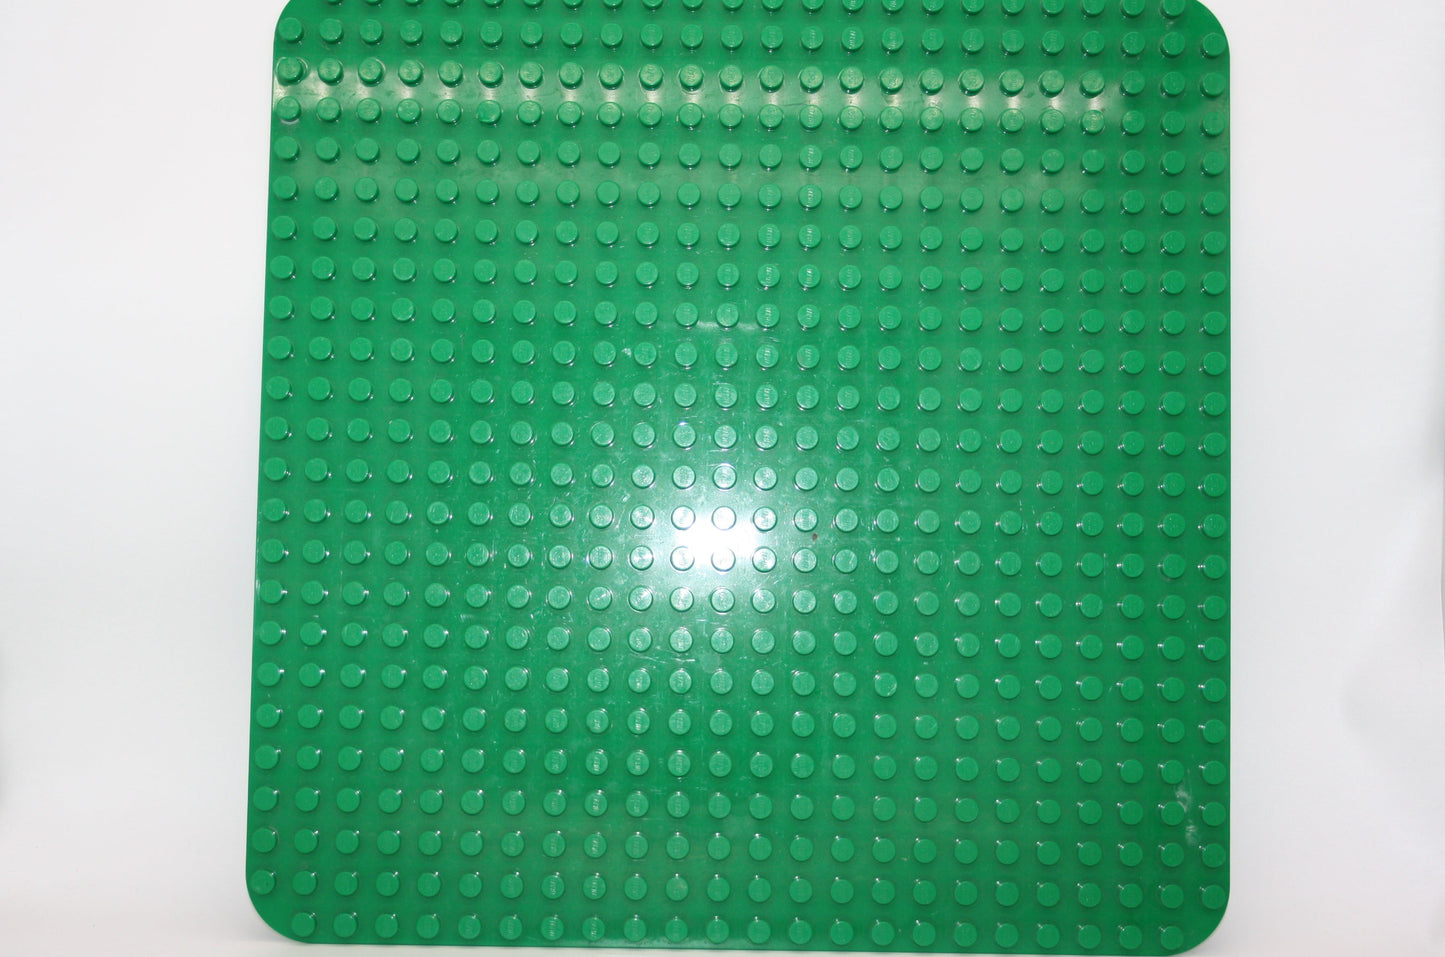 Duplo - 38x38 Platten  - grün - Bauplatten - Grundplatten